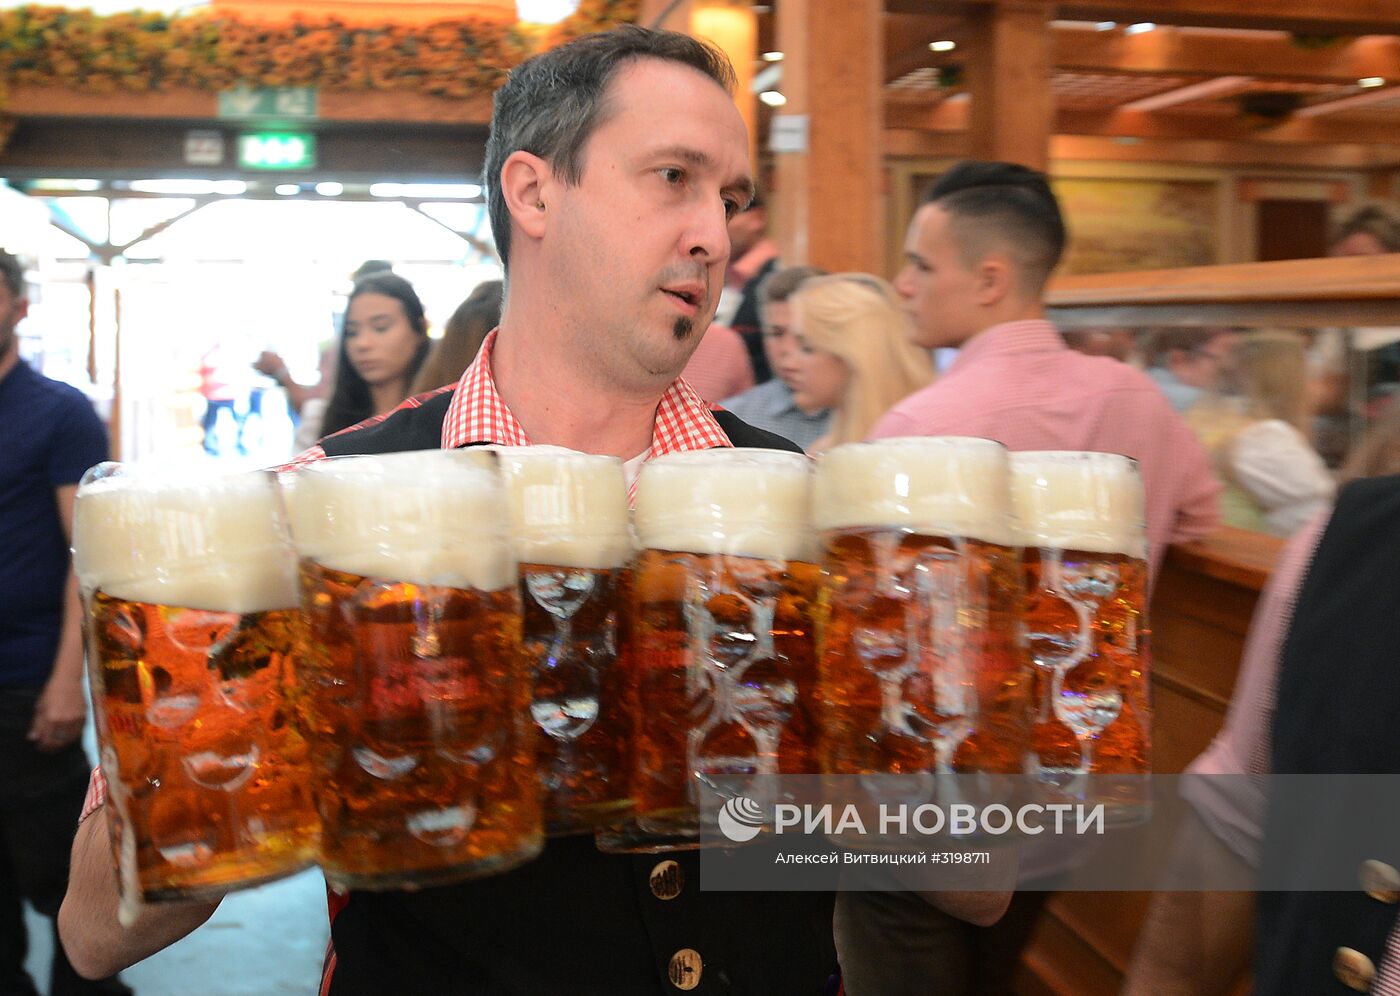 Фестиваль пива Октоберфест в Мюнхене